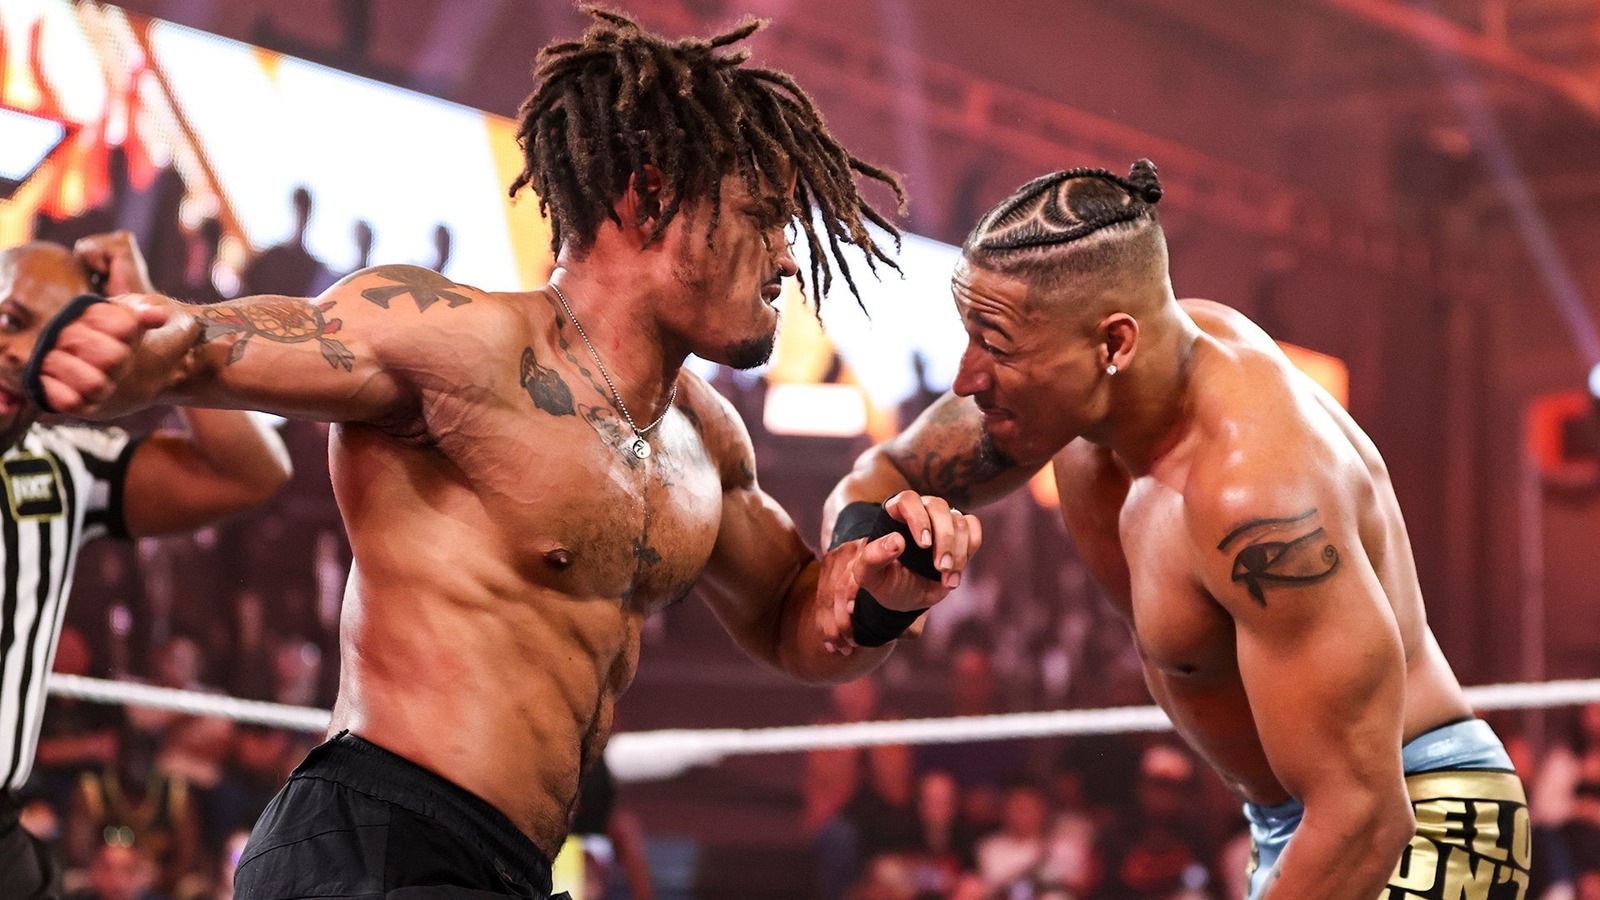 Por qué Booker T considera que el reciente evento principal de WWE NXT es "muy especial"